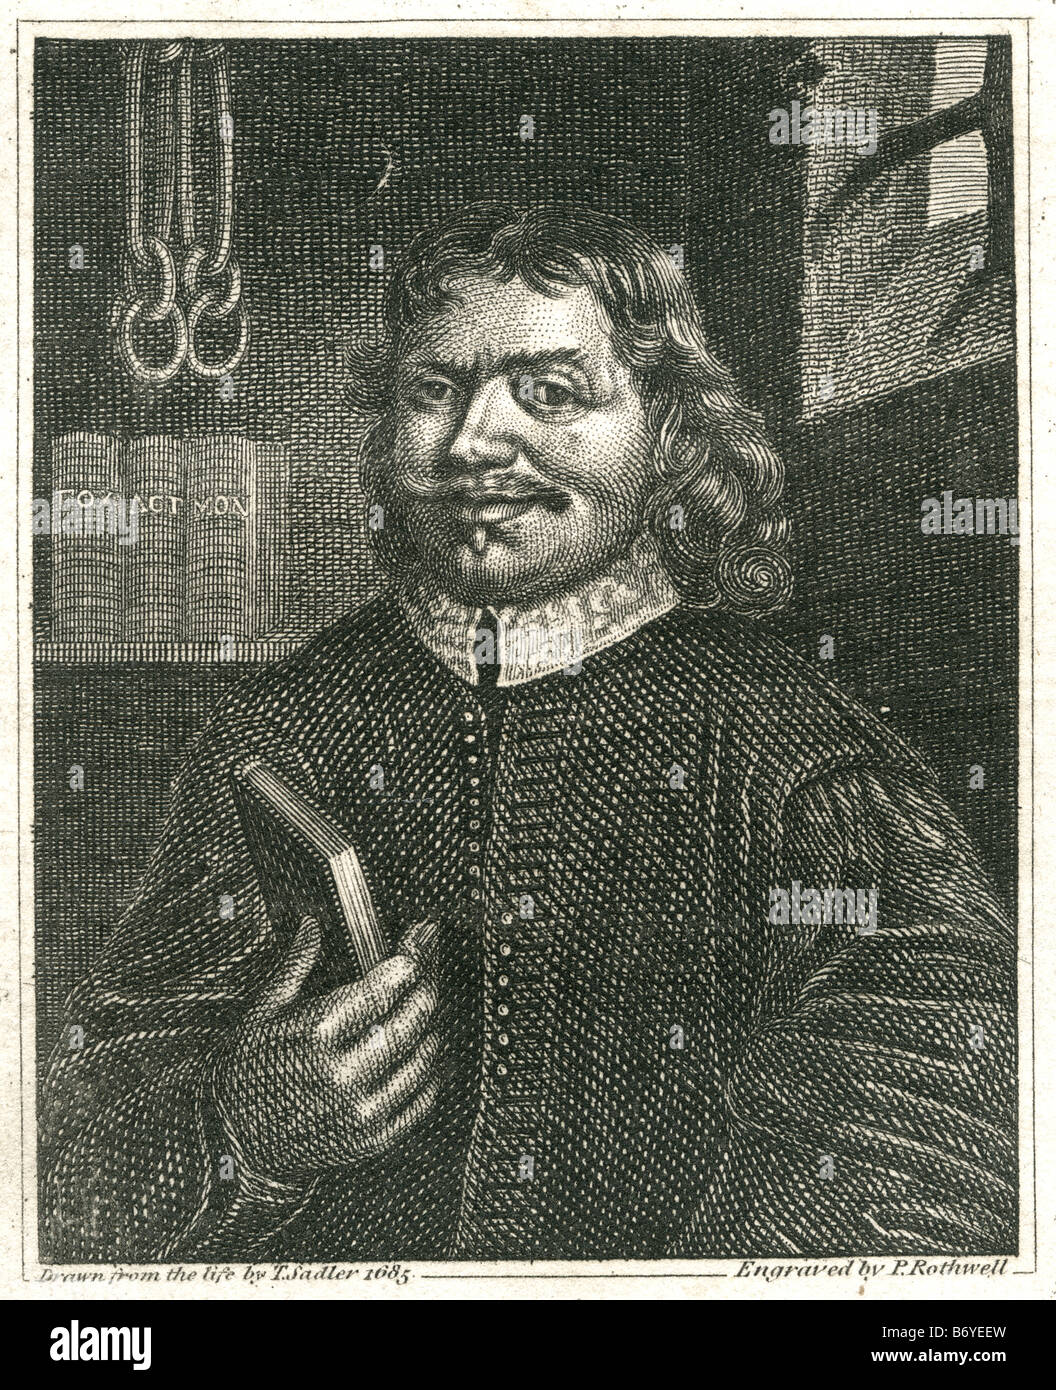 John Bunyan (28 de noviembre de 1628 - 31 de agosto de 1688) fue un escritor cristiano y predicador inglés, Foto de stock